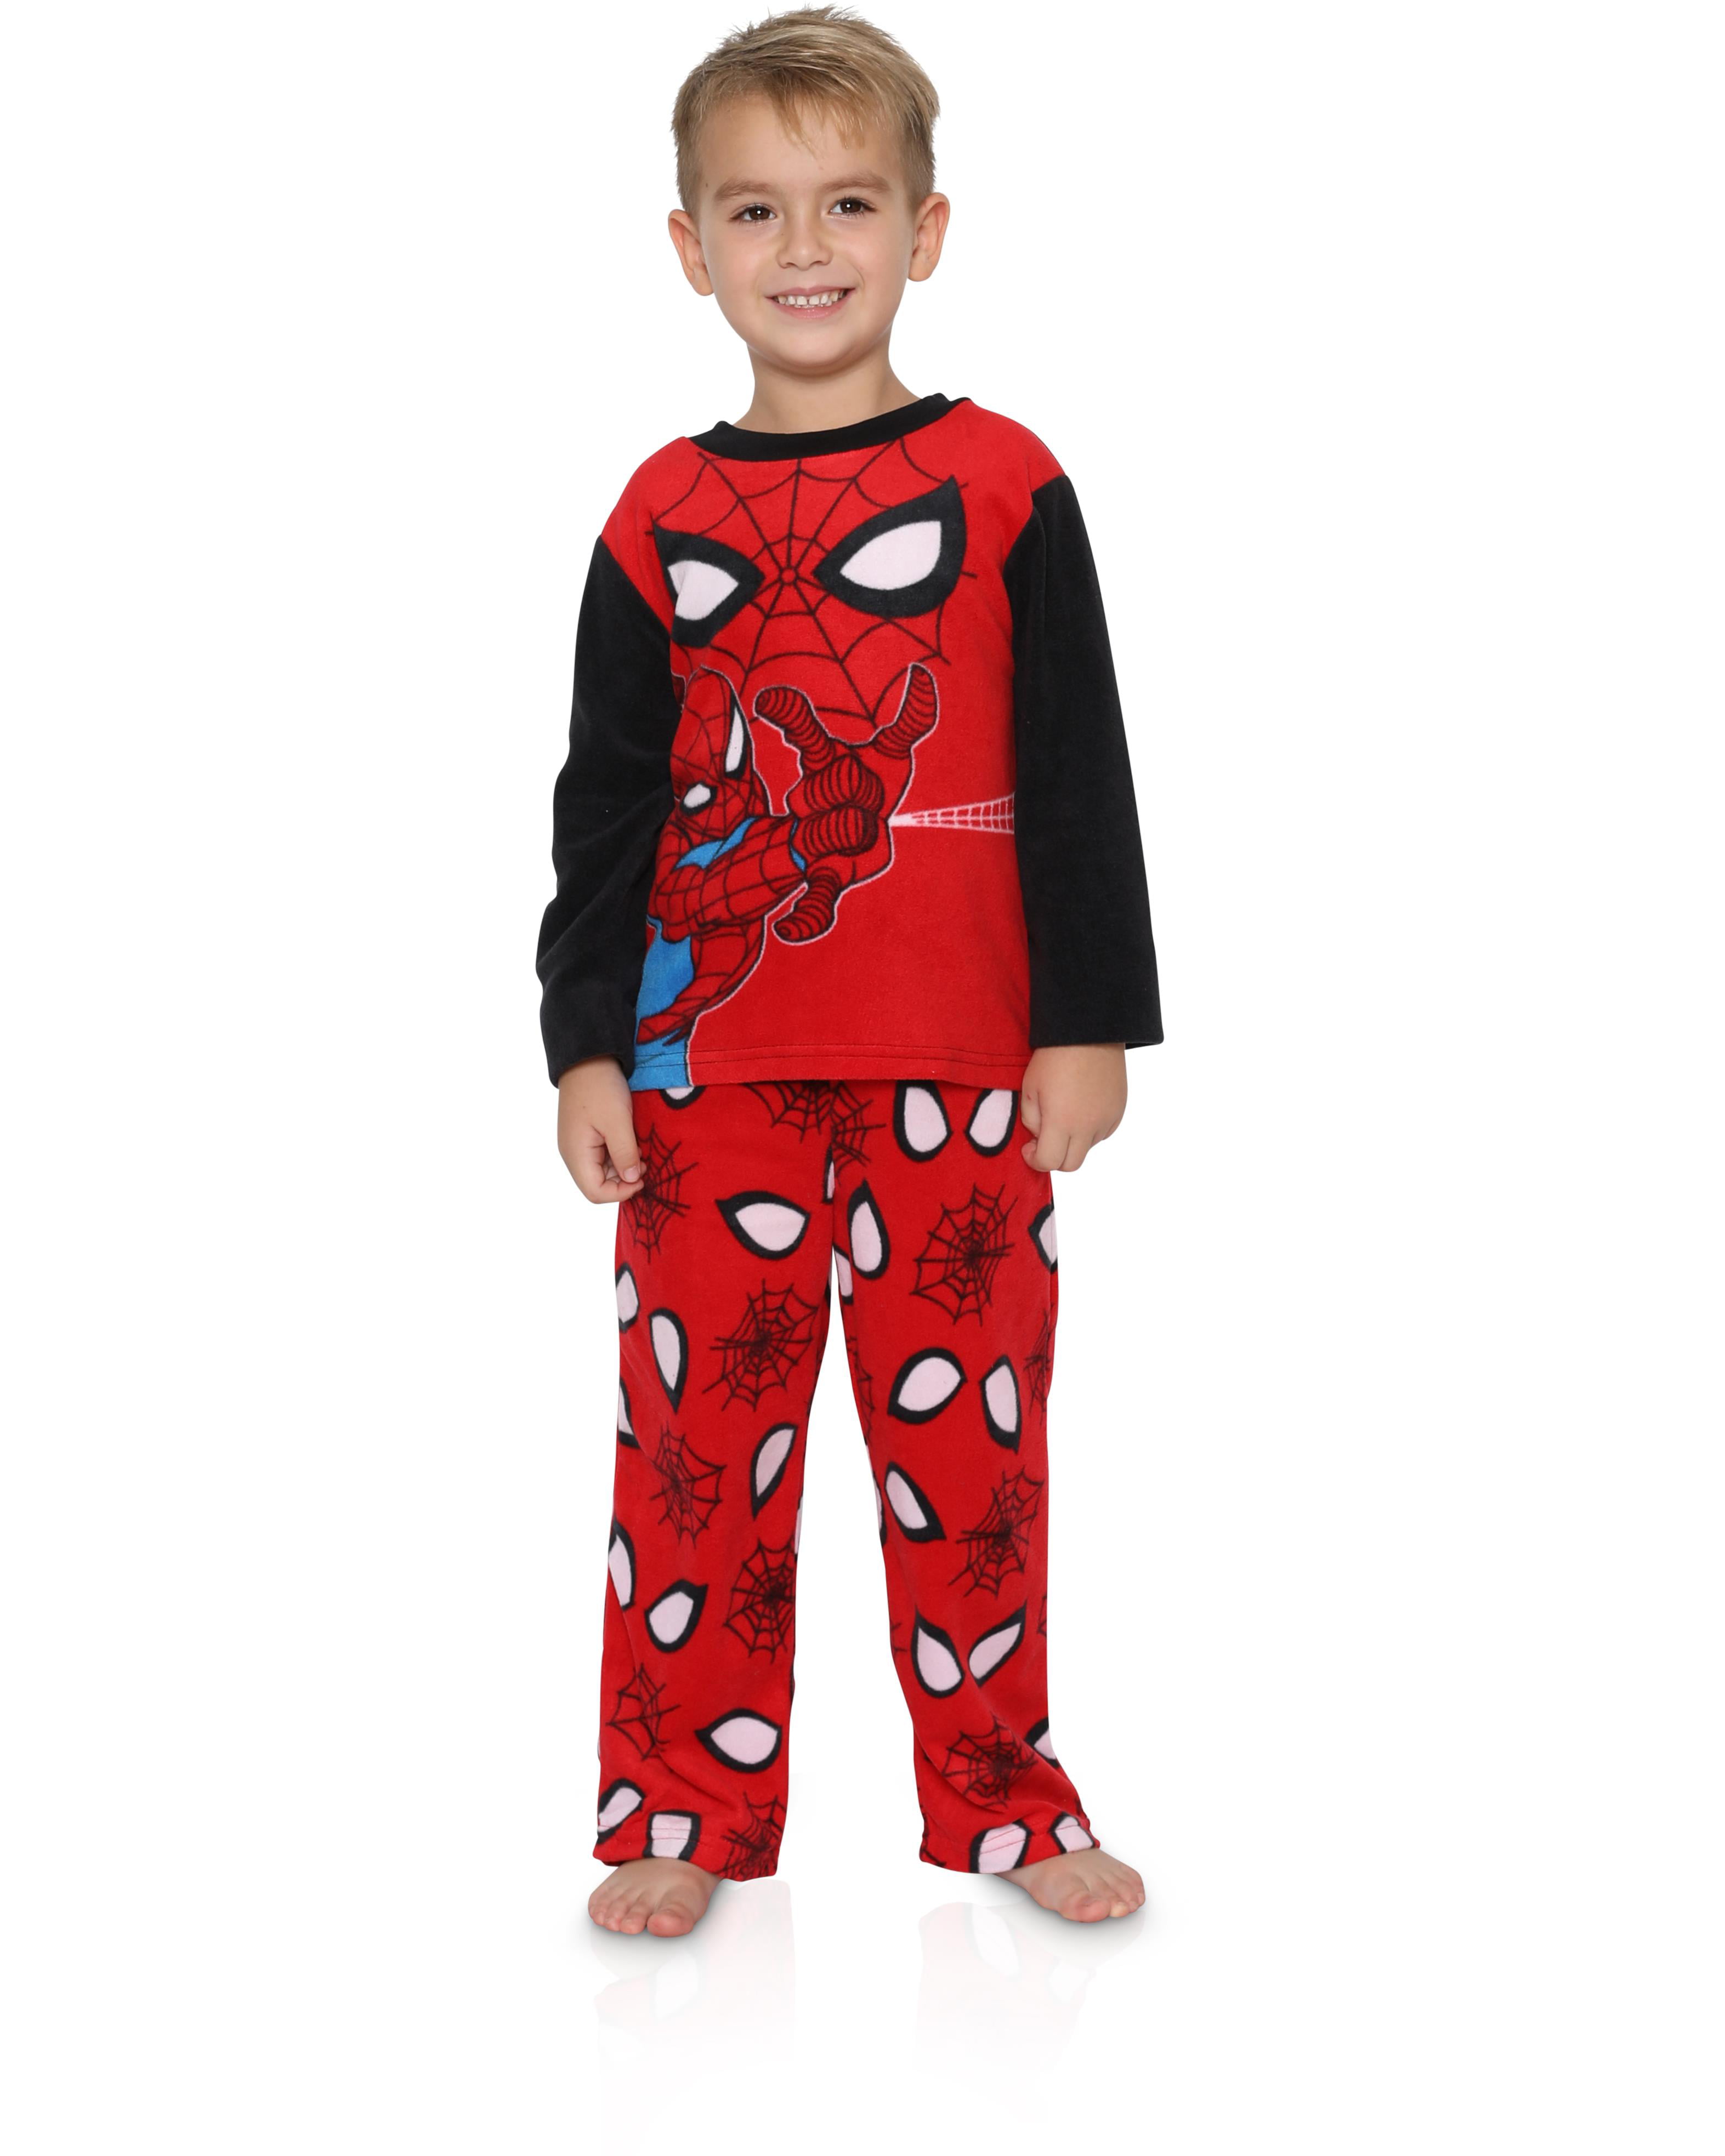 GERGER BO Spiderman Pajamas,Boys Pajamas Kids Short Sets 100% Cotton Clothes Cartoon Sleepwears 